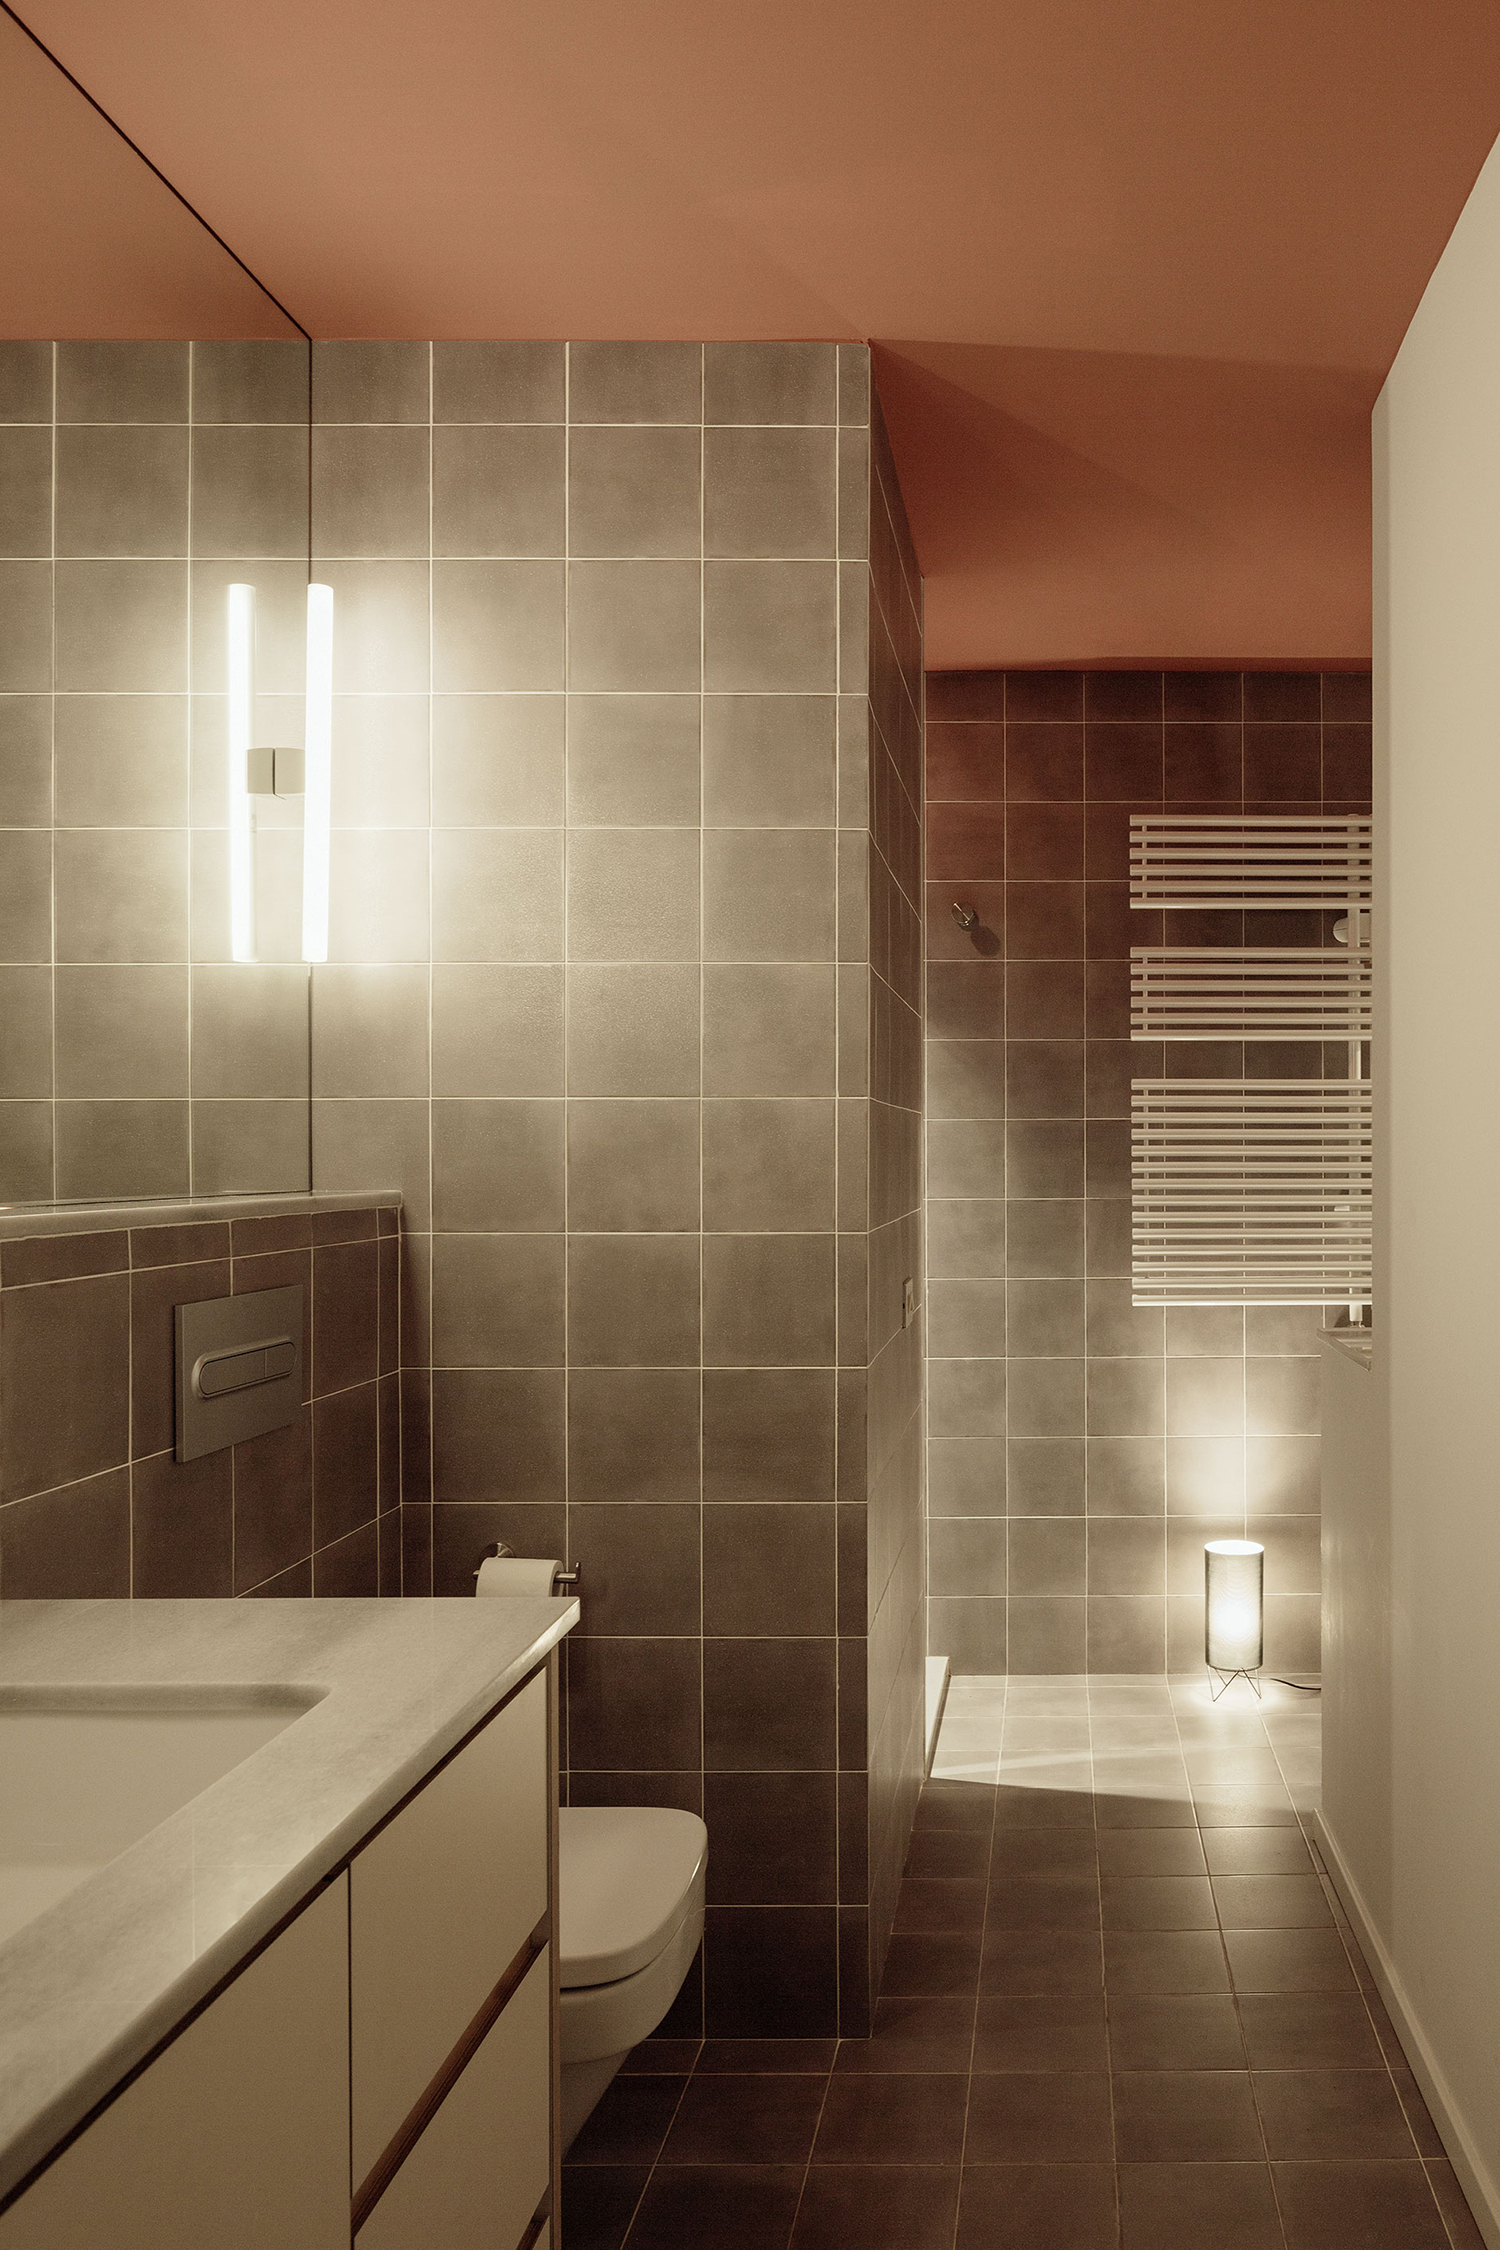 Tường và sàn phòng tắm được ốp gạch màu xám khói vừa dễ vệ sinh vừa rất đẹp mắt và thời trang. Thiết kế tối giản nhưng đáp ứng đầy đủ những tiện nghi cơ bản của phòng tắm.